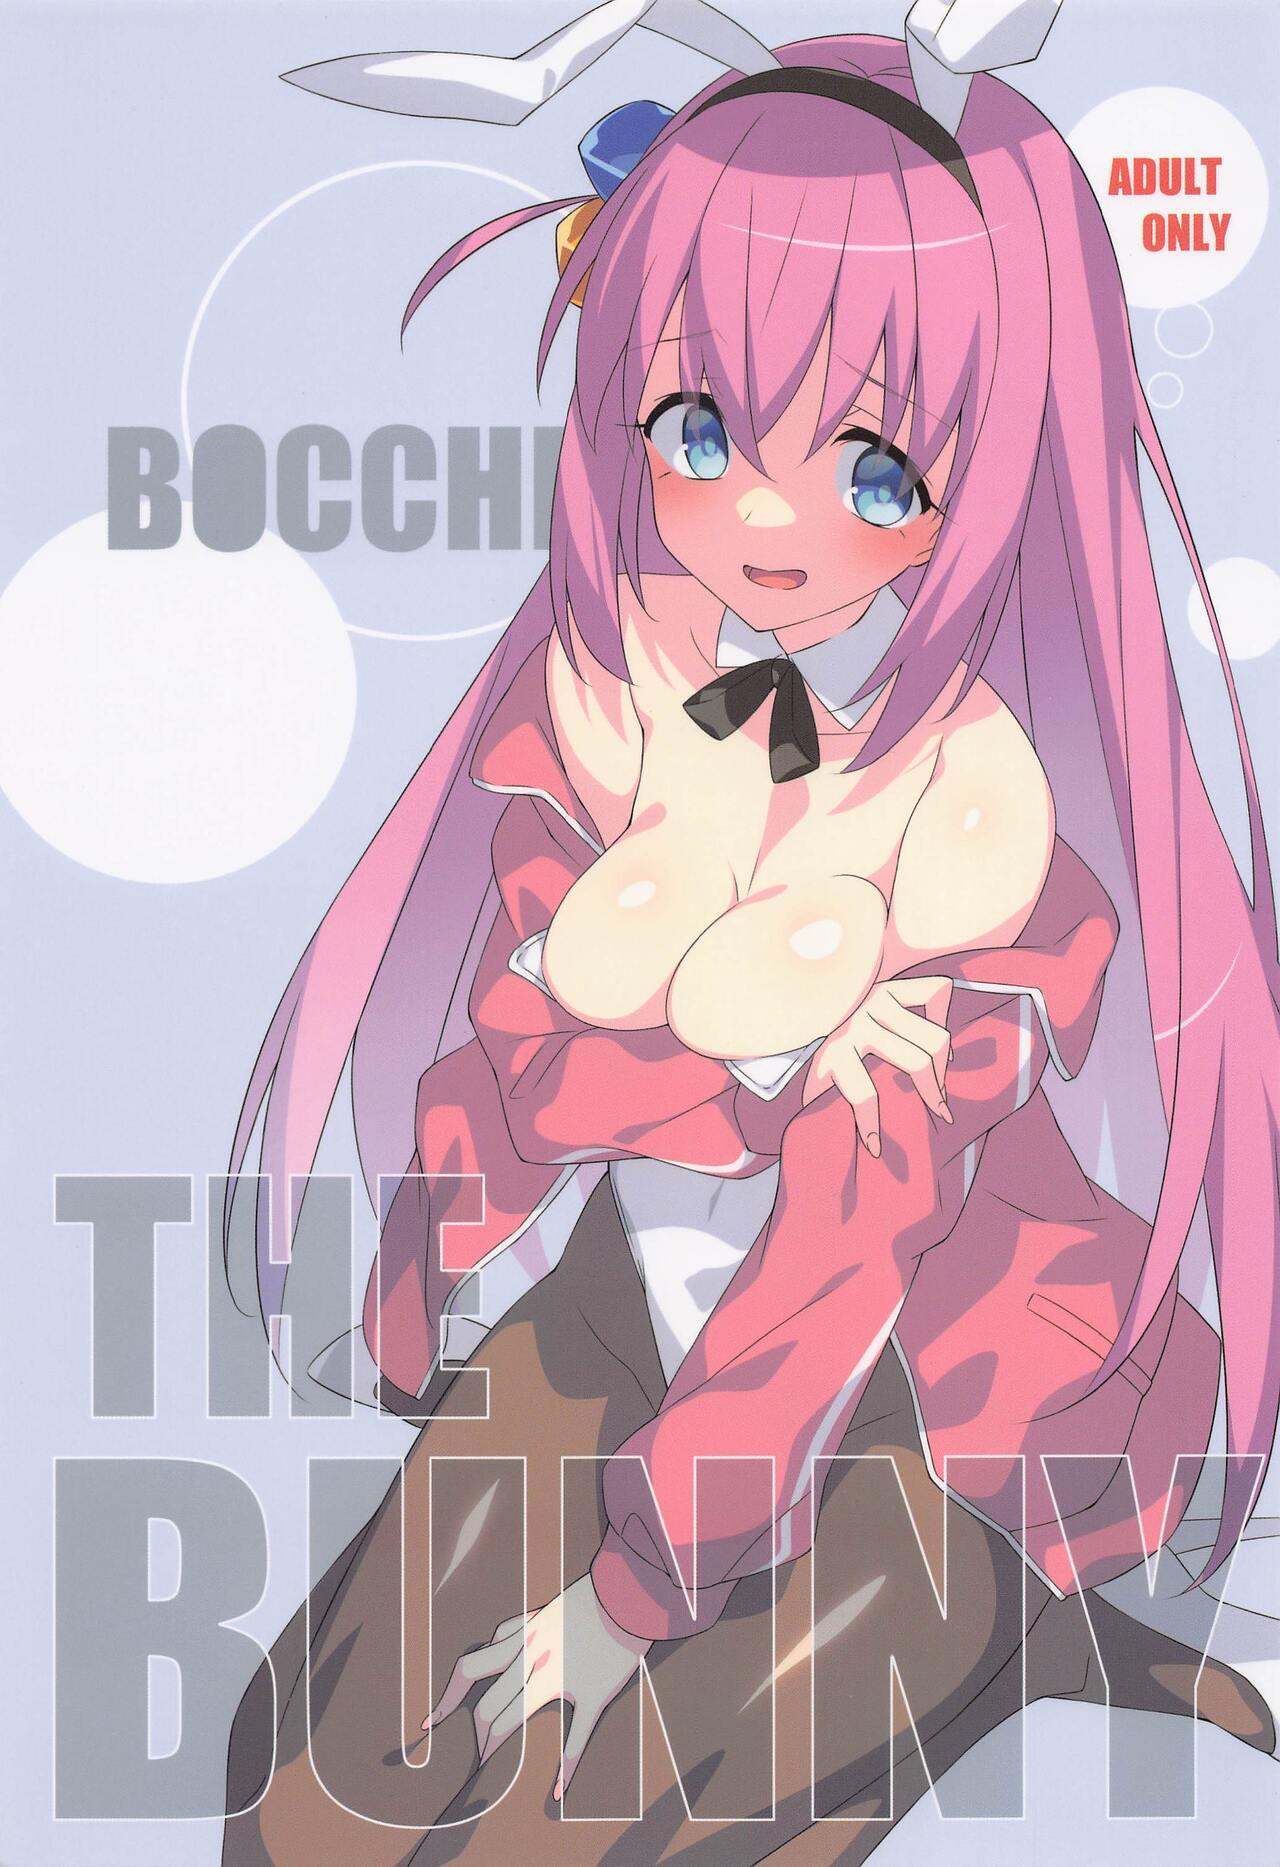 Escort BOCCHI THE BUNNY - Bocchi the rock Whatsapp - Picture 1